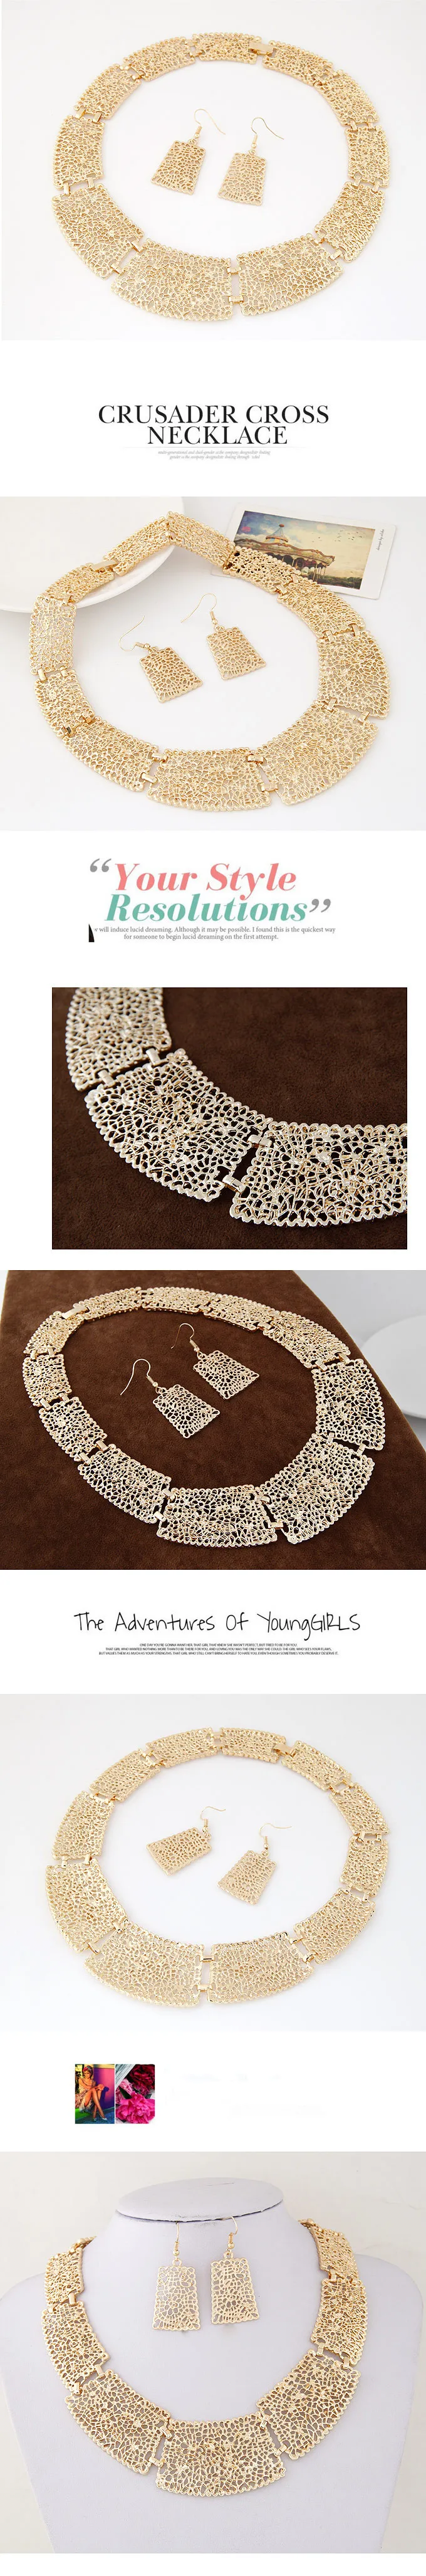 Kymyad Африканский индийский комплект ювелирных изделий цветок полые Ювелирные наборы массивное Ожерелье Комплект сережек для женщин ювелирные изделия аксессуары